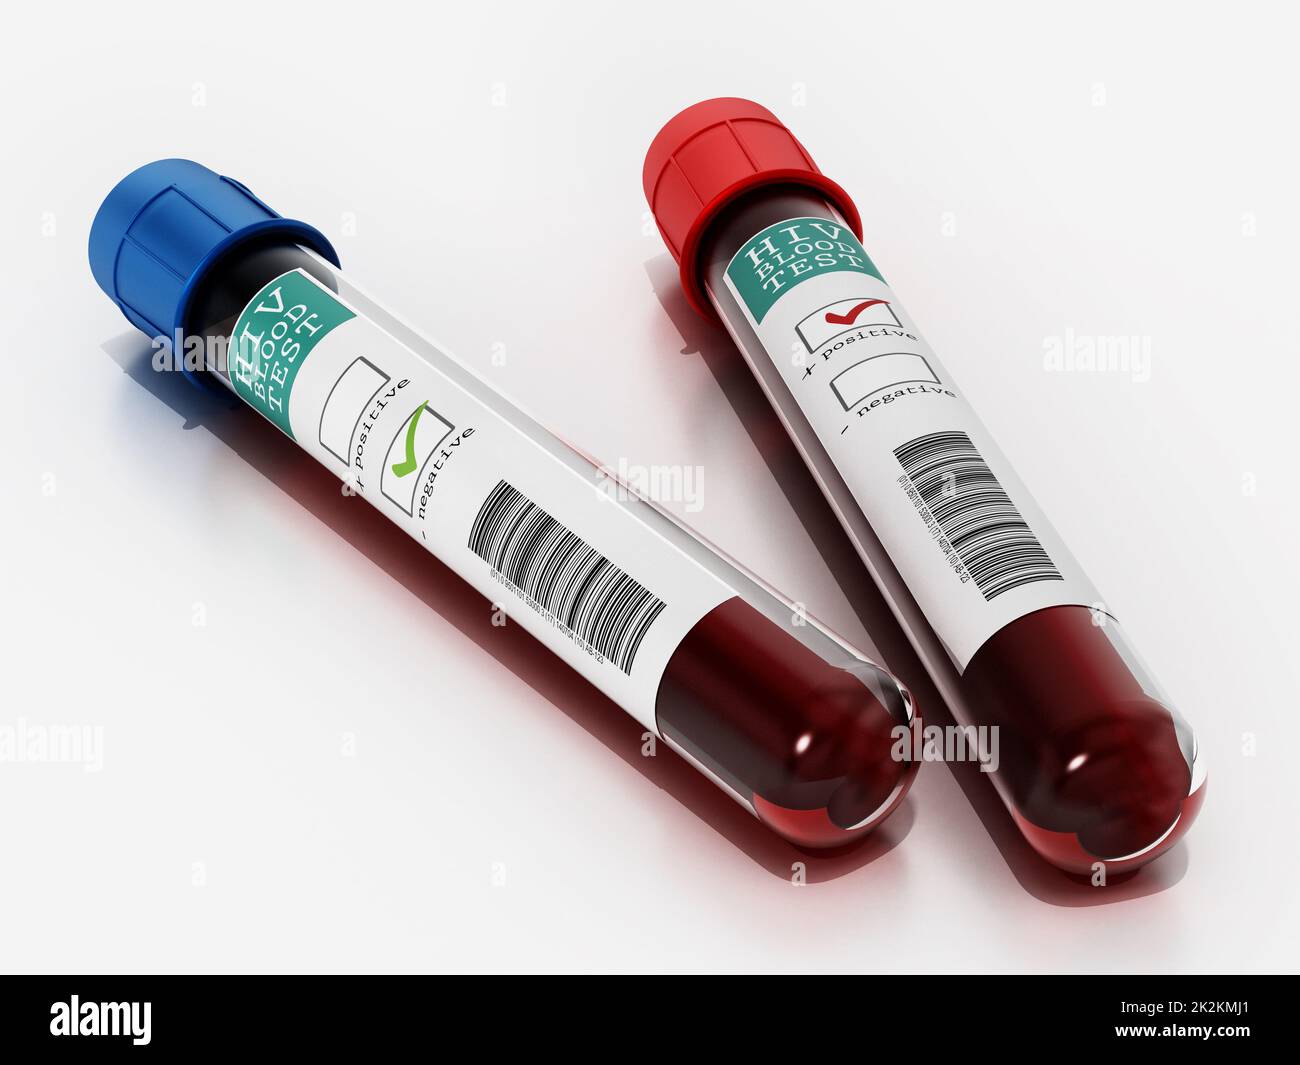 Échantillons de sang positifs et négatifs en flacons portant des étiquettes de test VIH. 3D illustration Banque D'Images